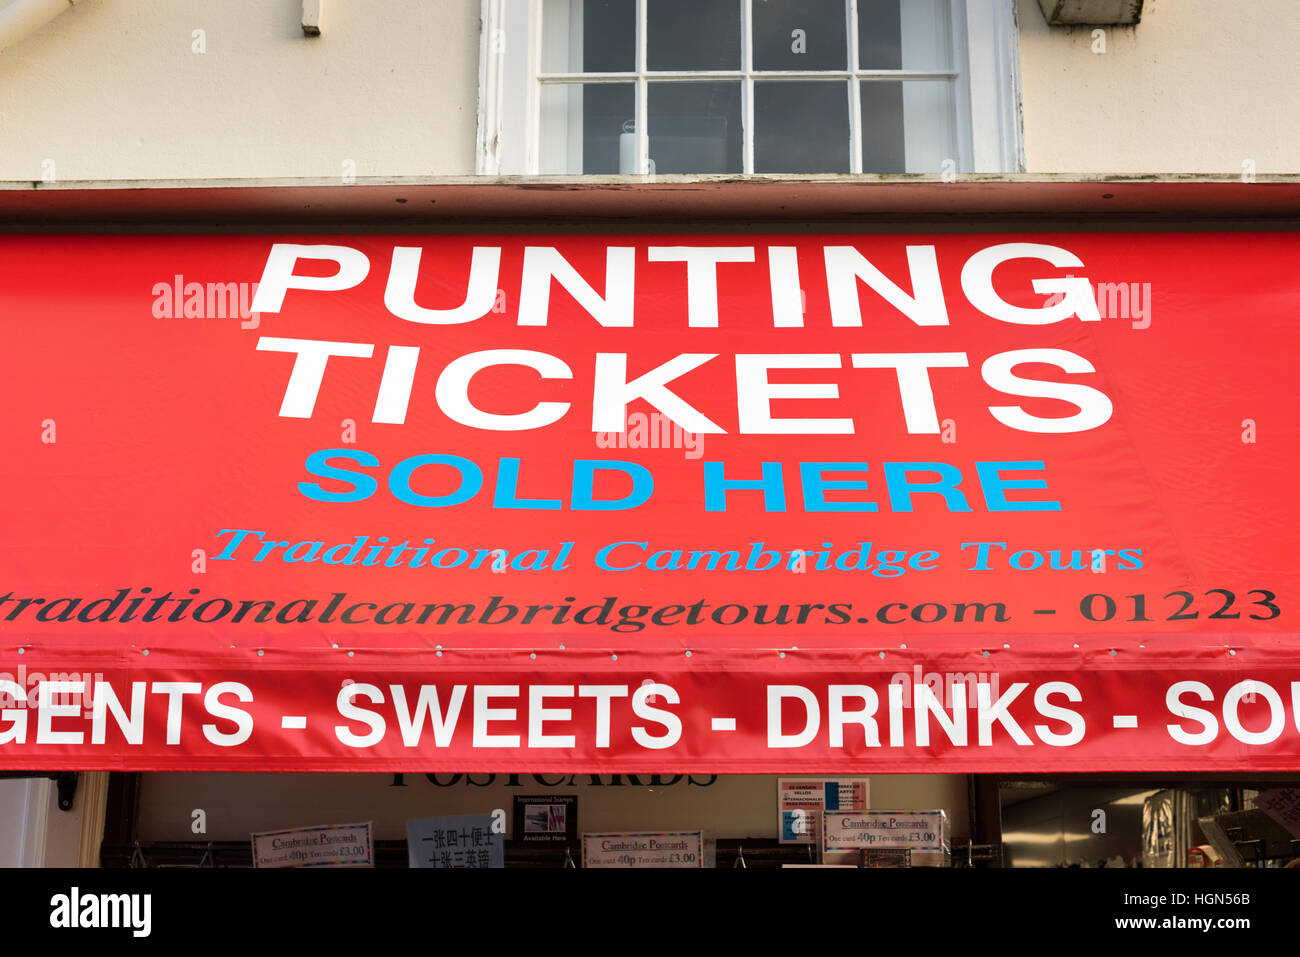 Un annuncio pubblicitario per punting biglietti su una tenda sopra un negozio in King's Parade Cambridge Regno Unito Foto Stock